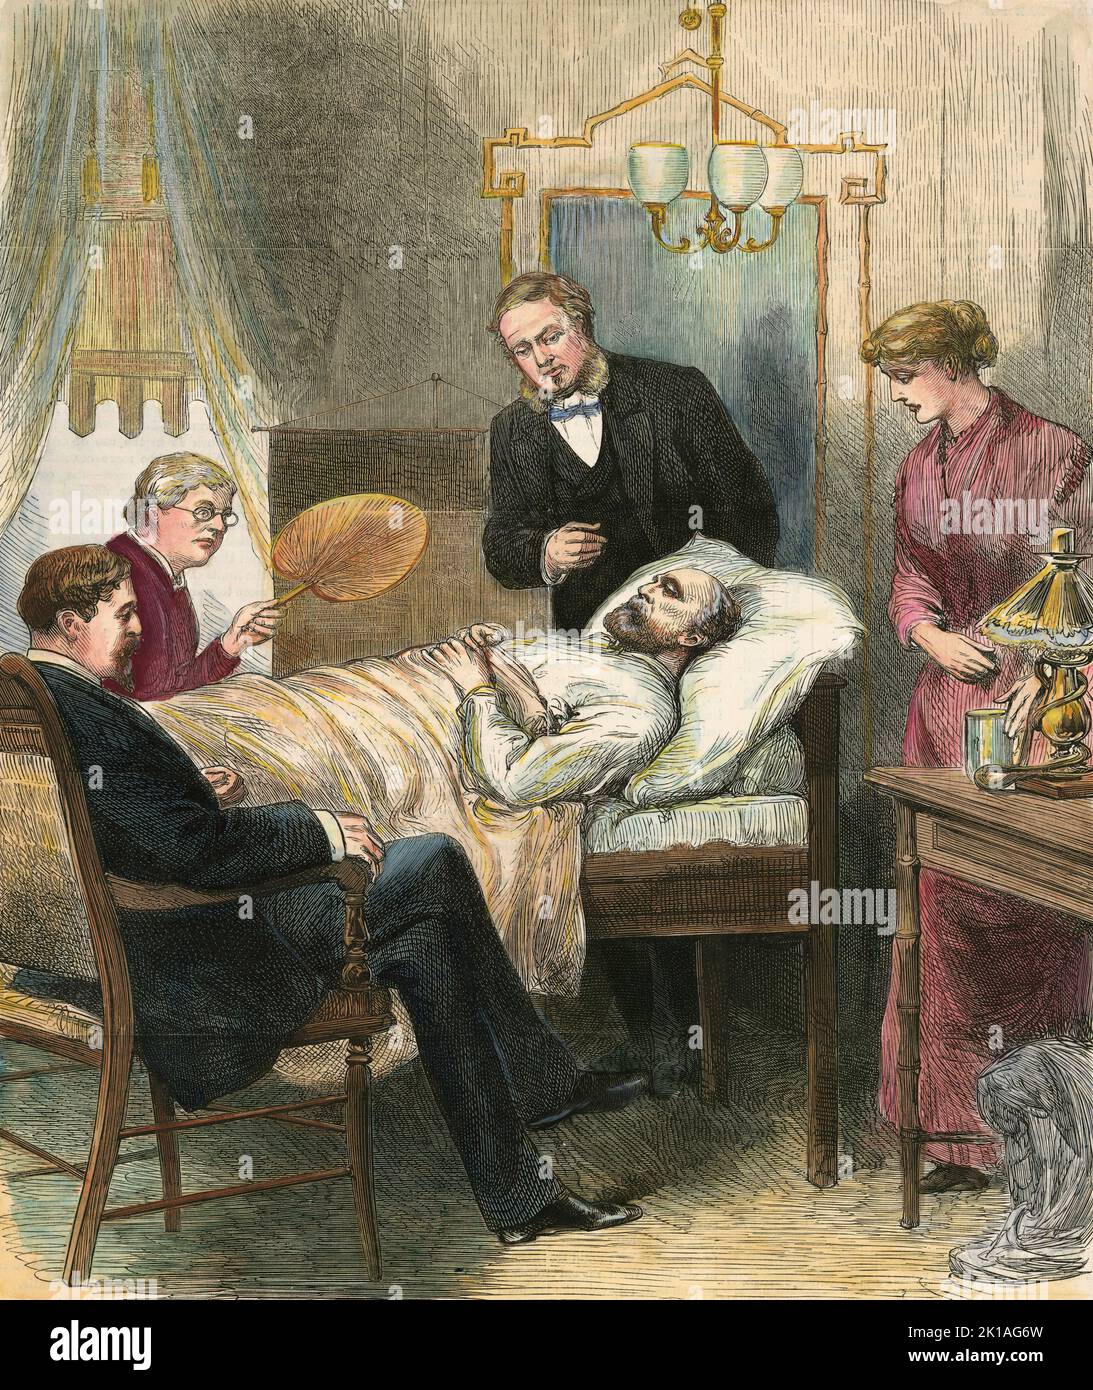 Le président James Garfield a été blessé dans son lit après la tentative d'assassinat de Charles Guiteauon 2 juillet 1881. Garfield n'a pas été tué par la balle mais est mort, probablement de septicémie, deux mois plus tard sur 19 septembre 1881. Banque D'Images